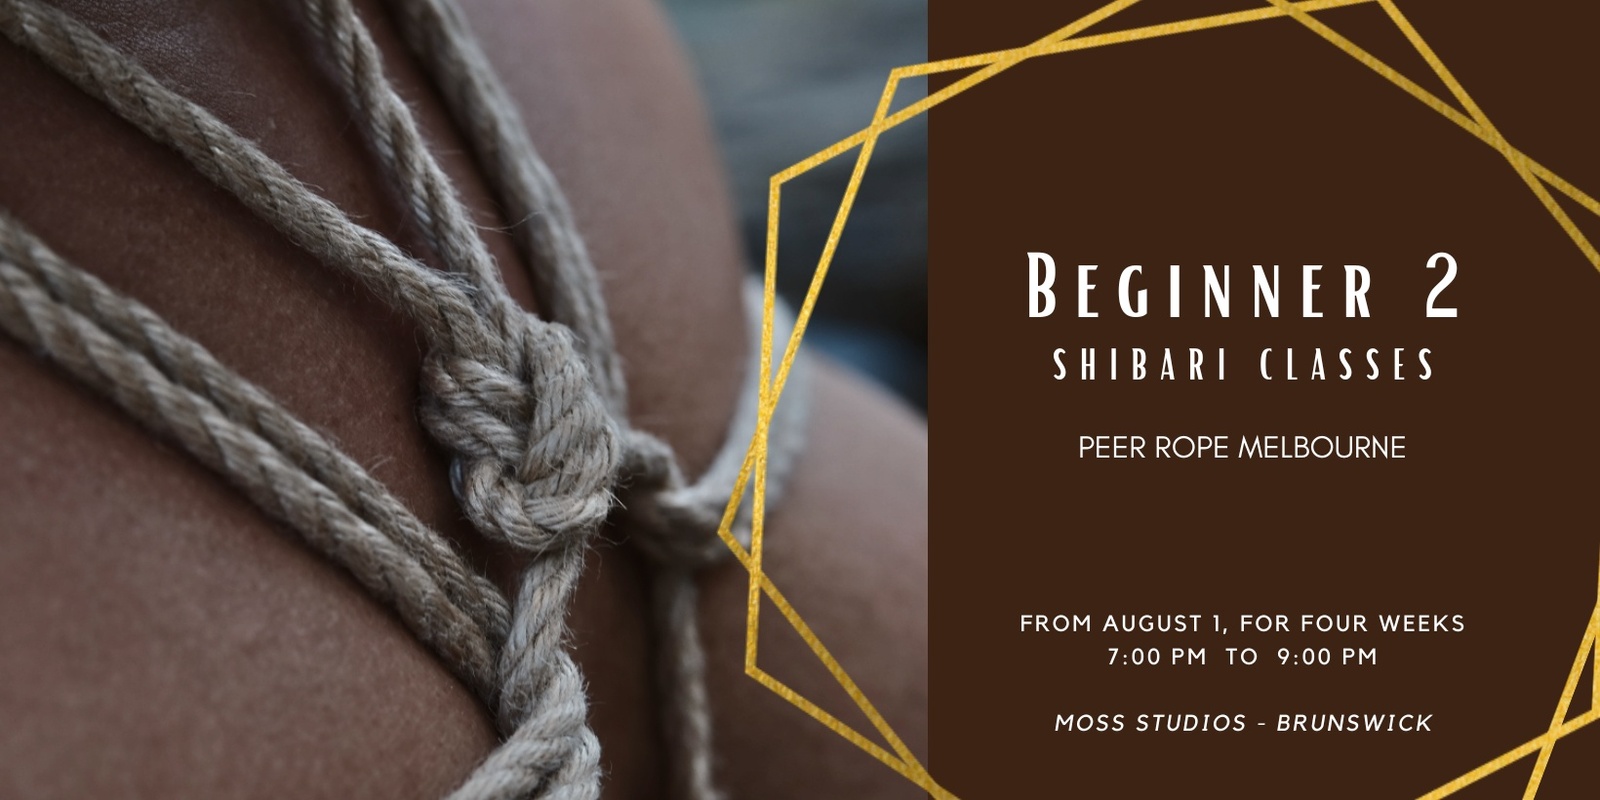 August Beginner 2 Rope classes - Peer Rope Melbourne